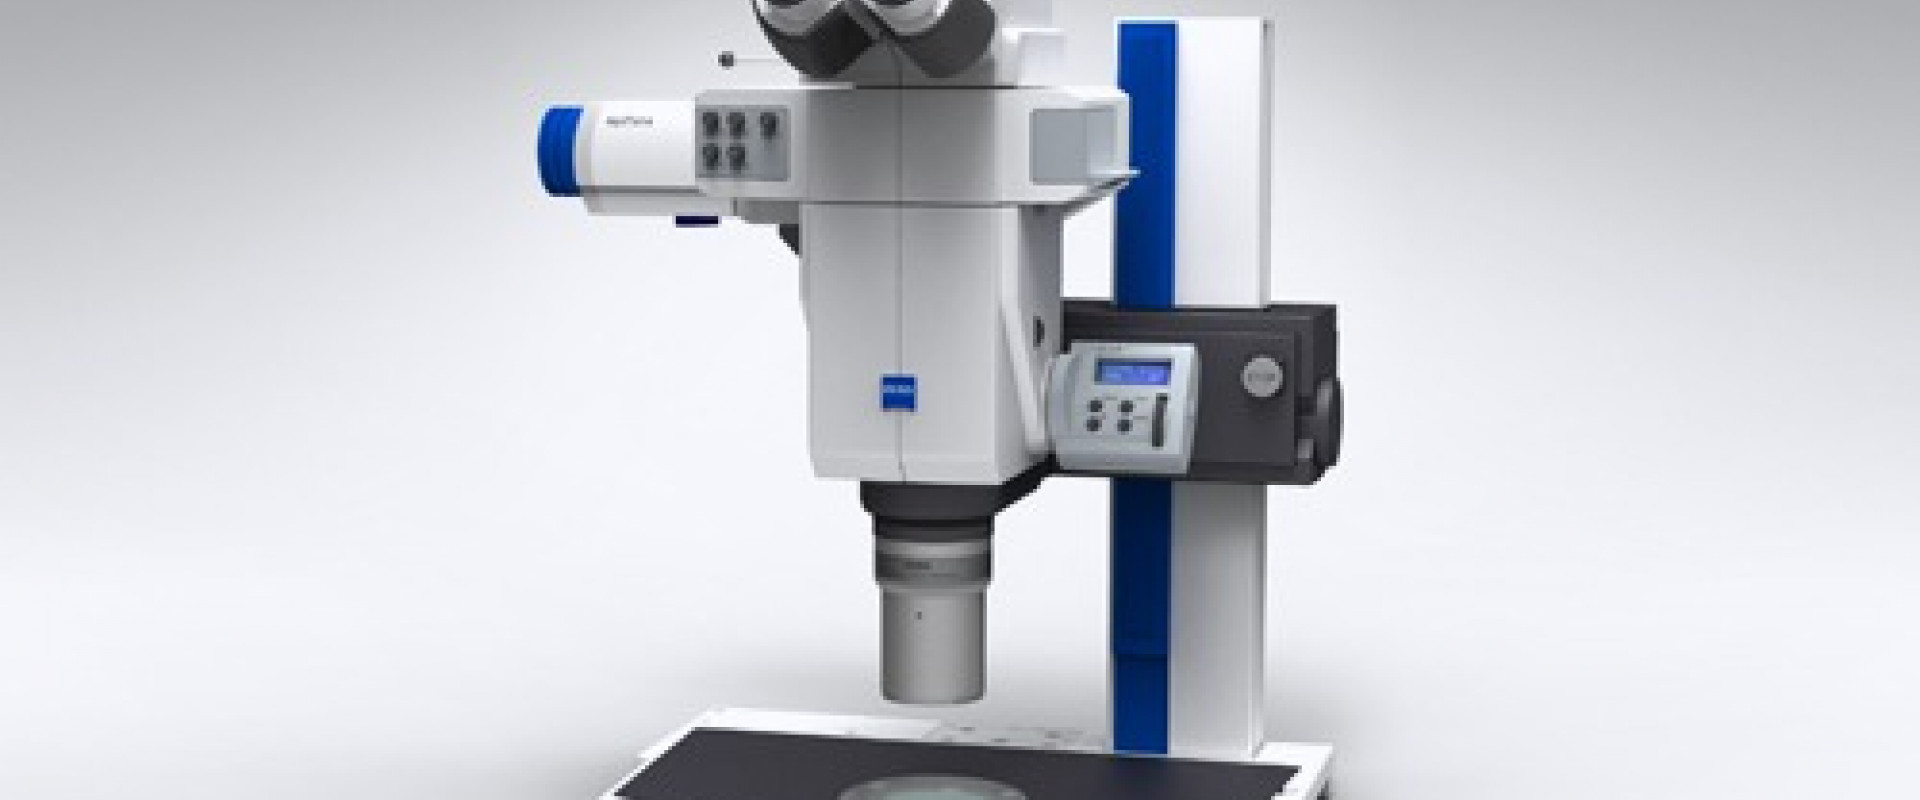 Zeiss Axio Zoom V16 Mikroskop